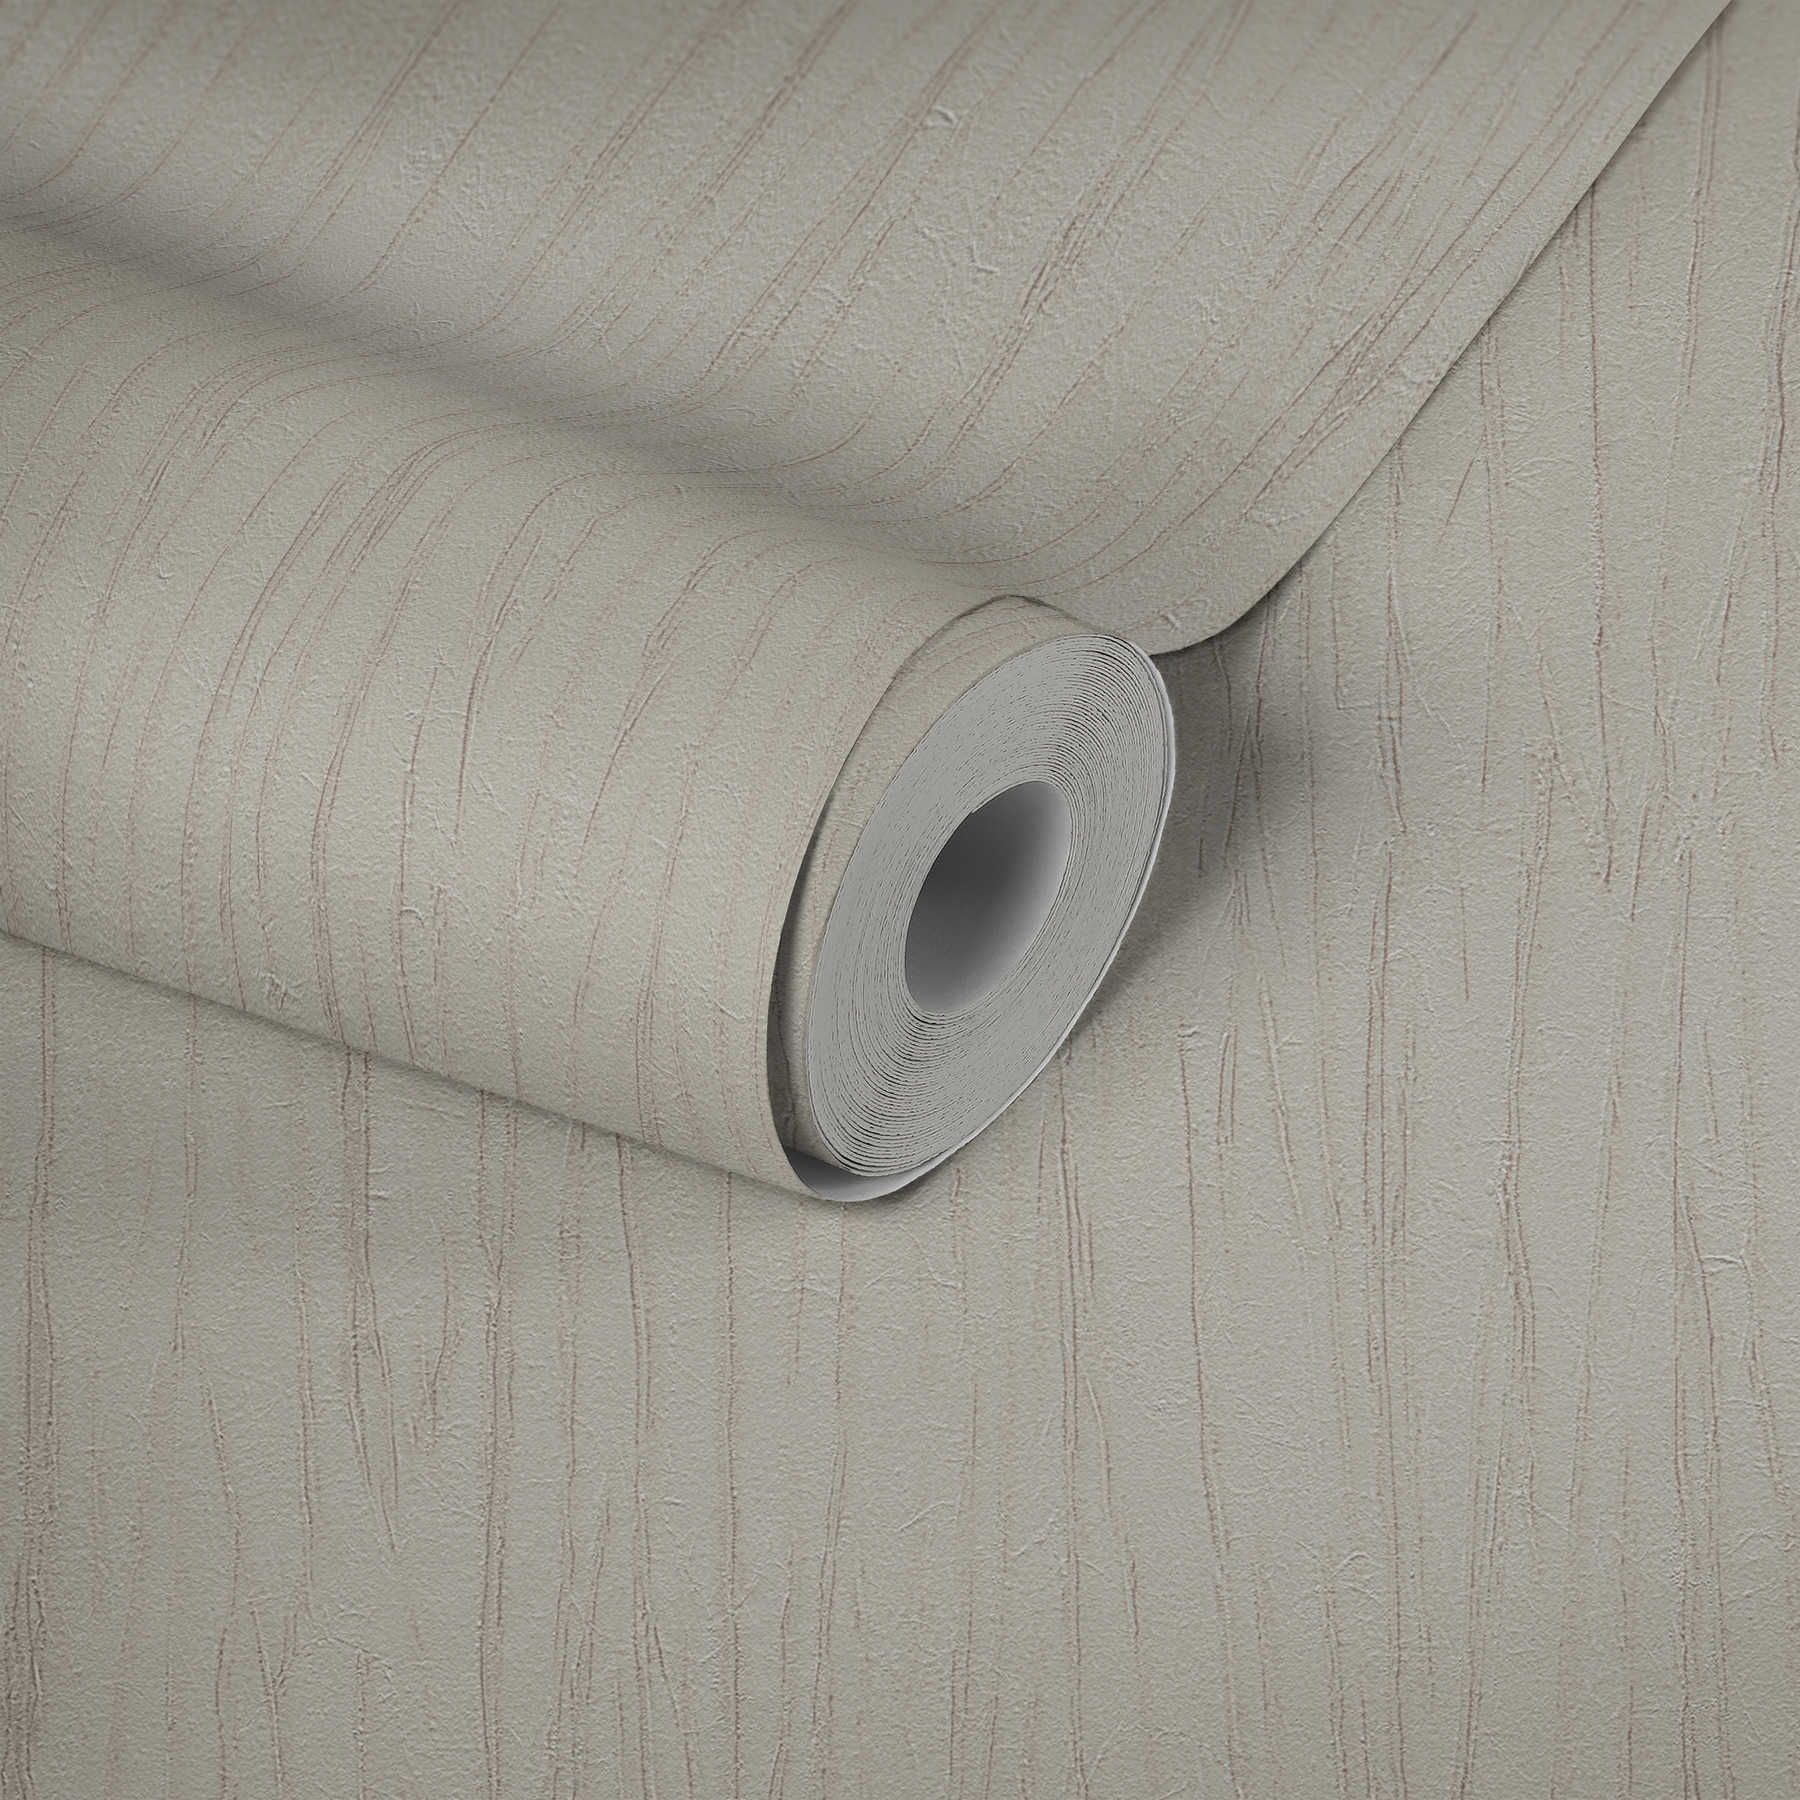             Wallpaper Crush structure & metallic effect - beige, grey
        